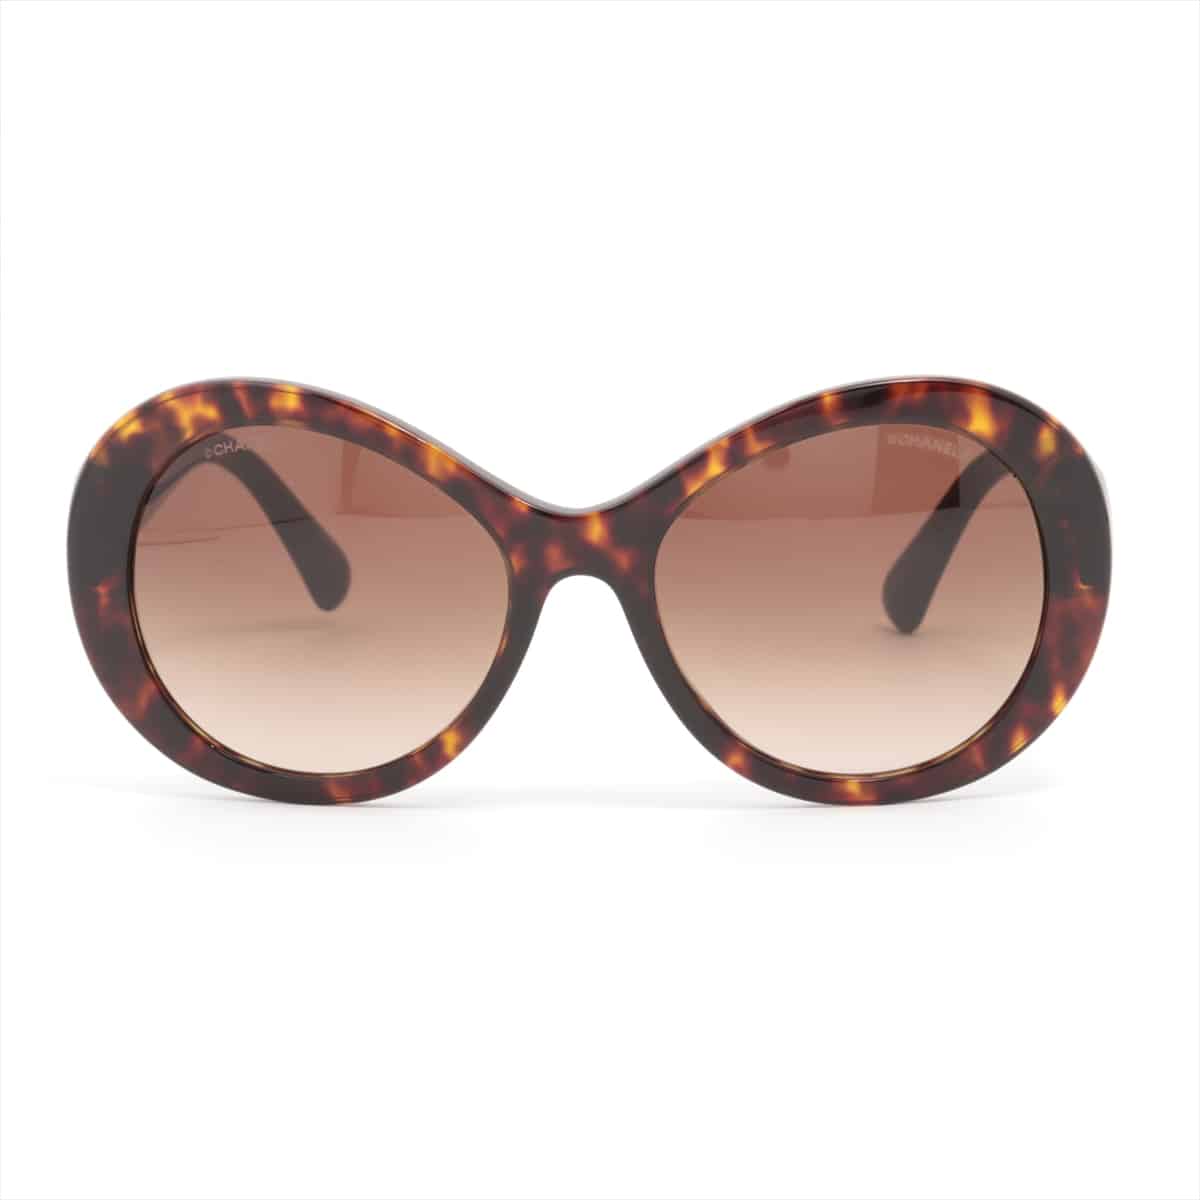 Chanel 5372-A Coco Mark Sunglasses Plastic Brown